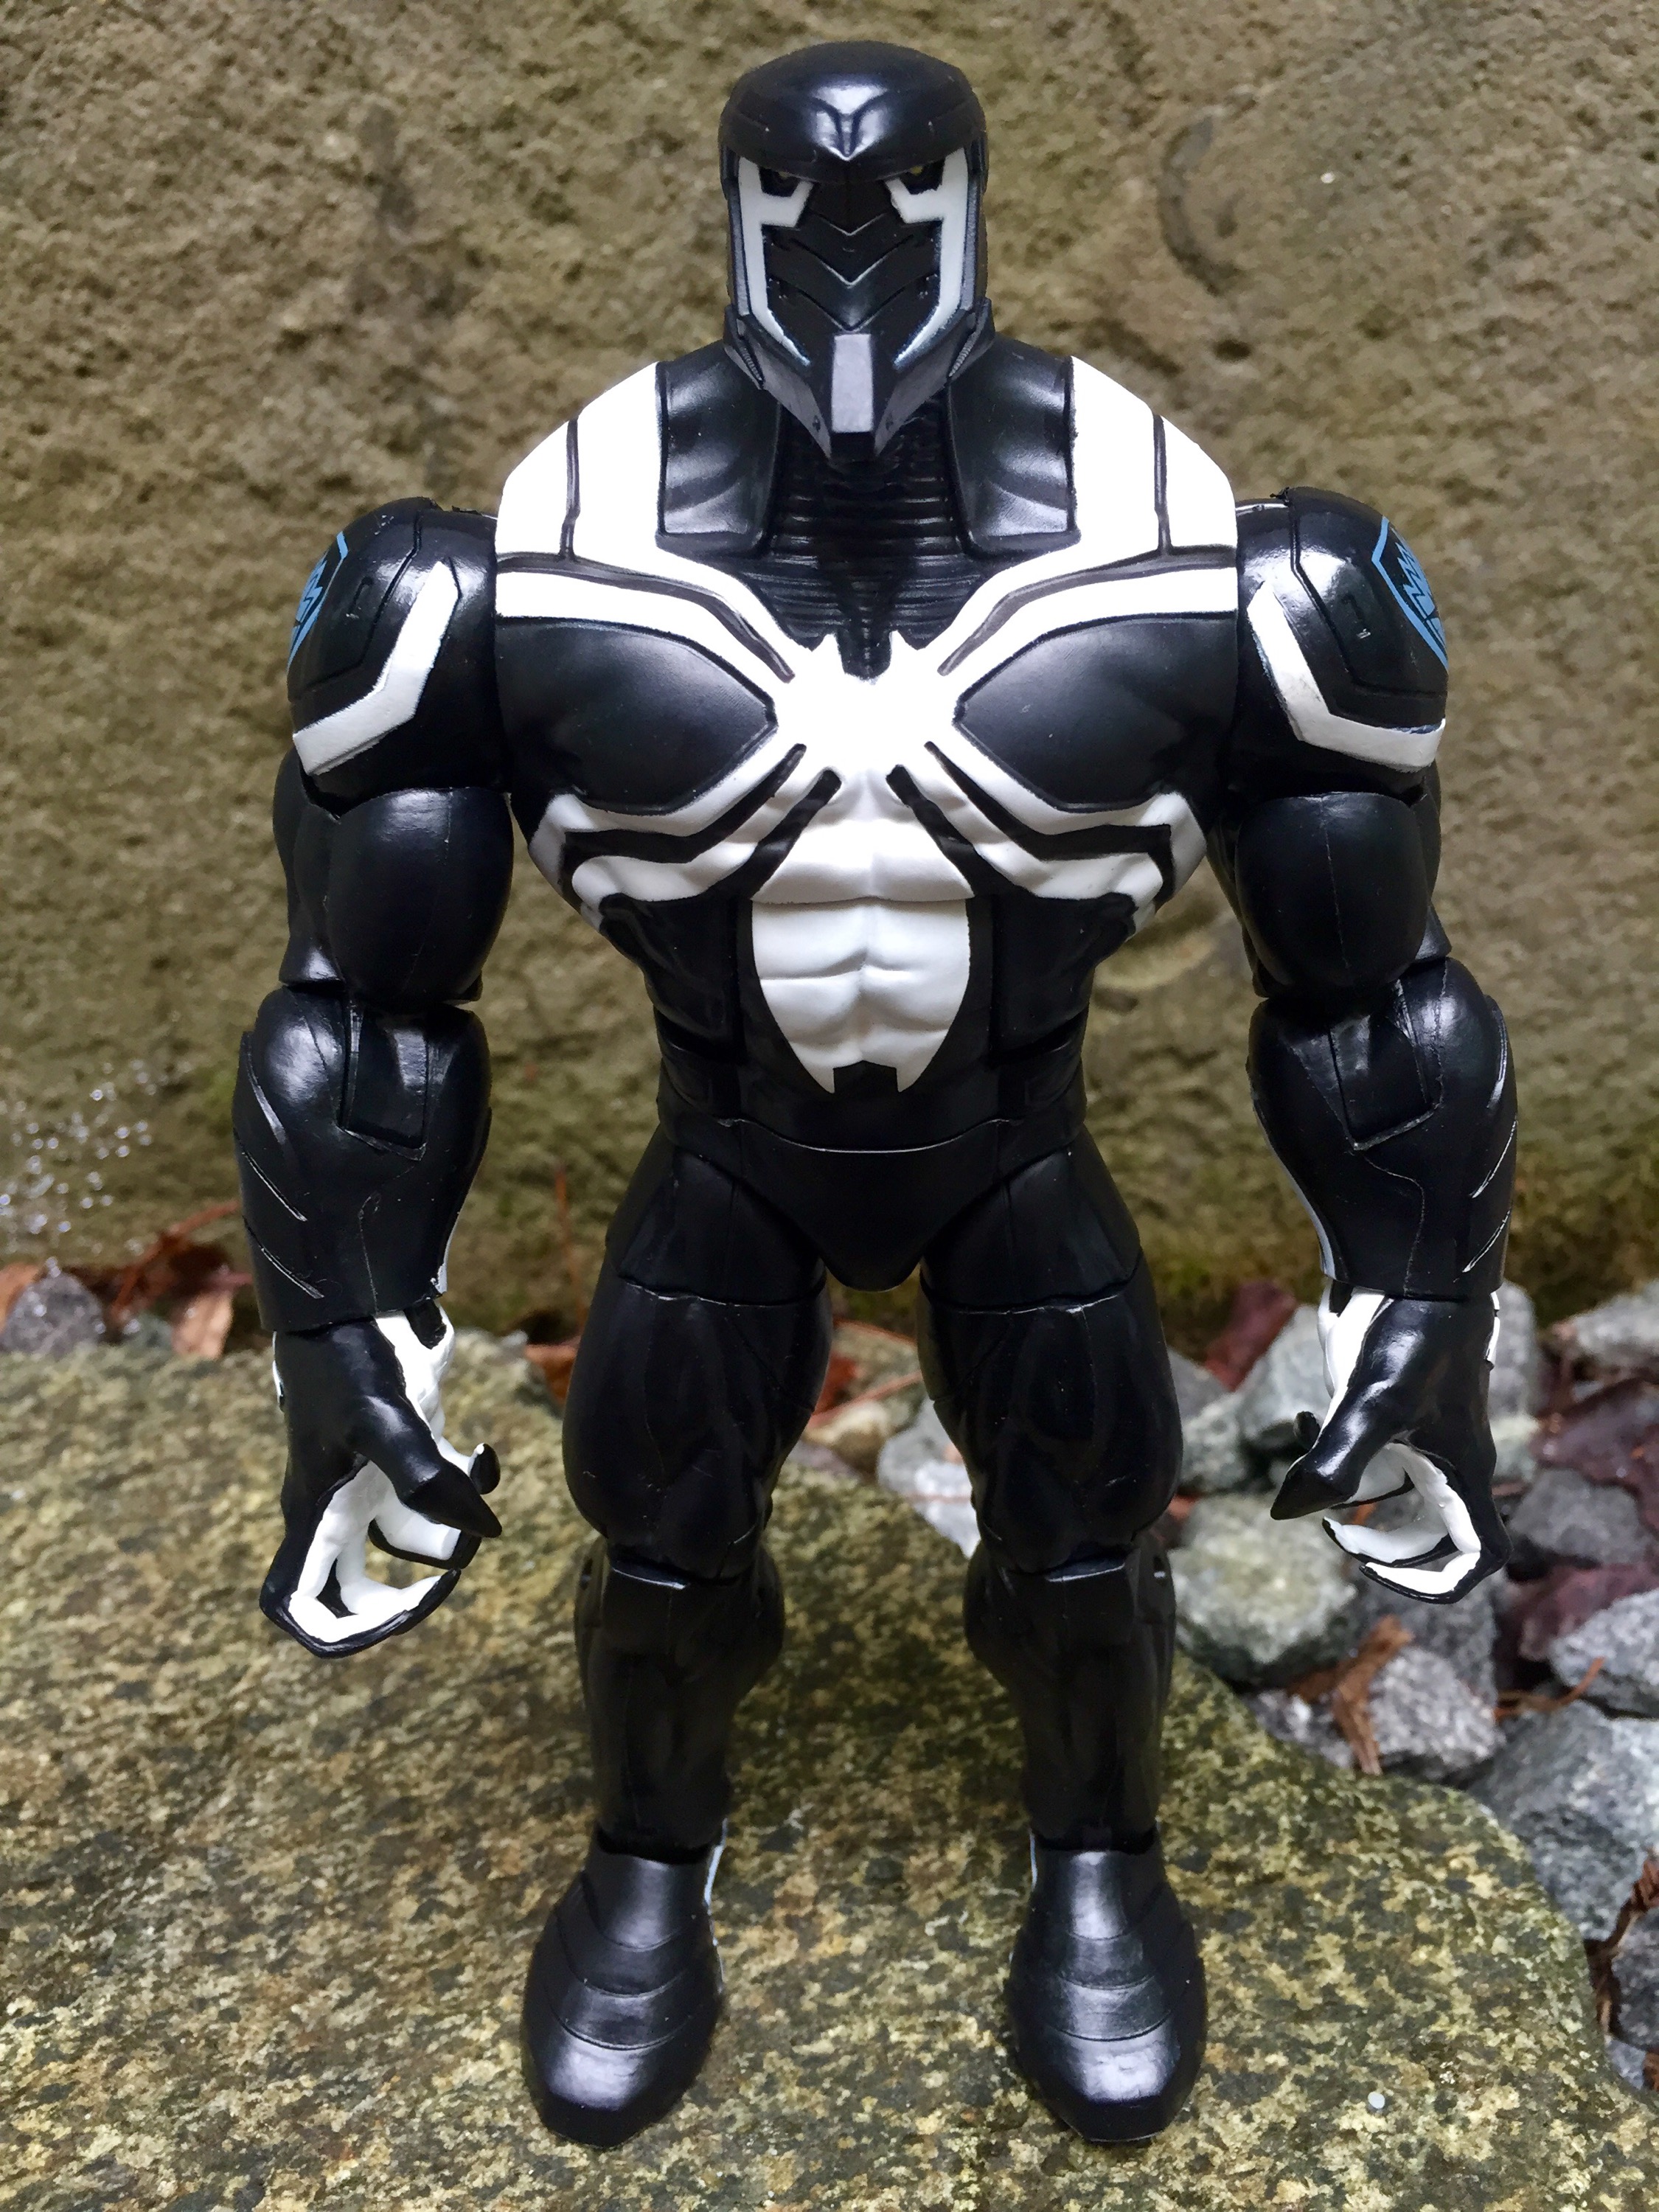 Marvel Legends Space Venom BuildAFigure Review (Spider